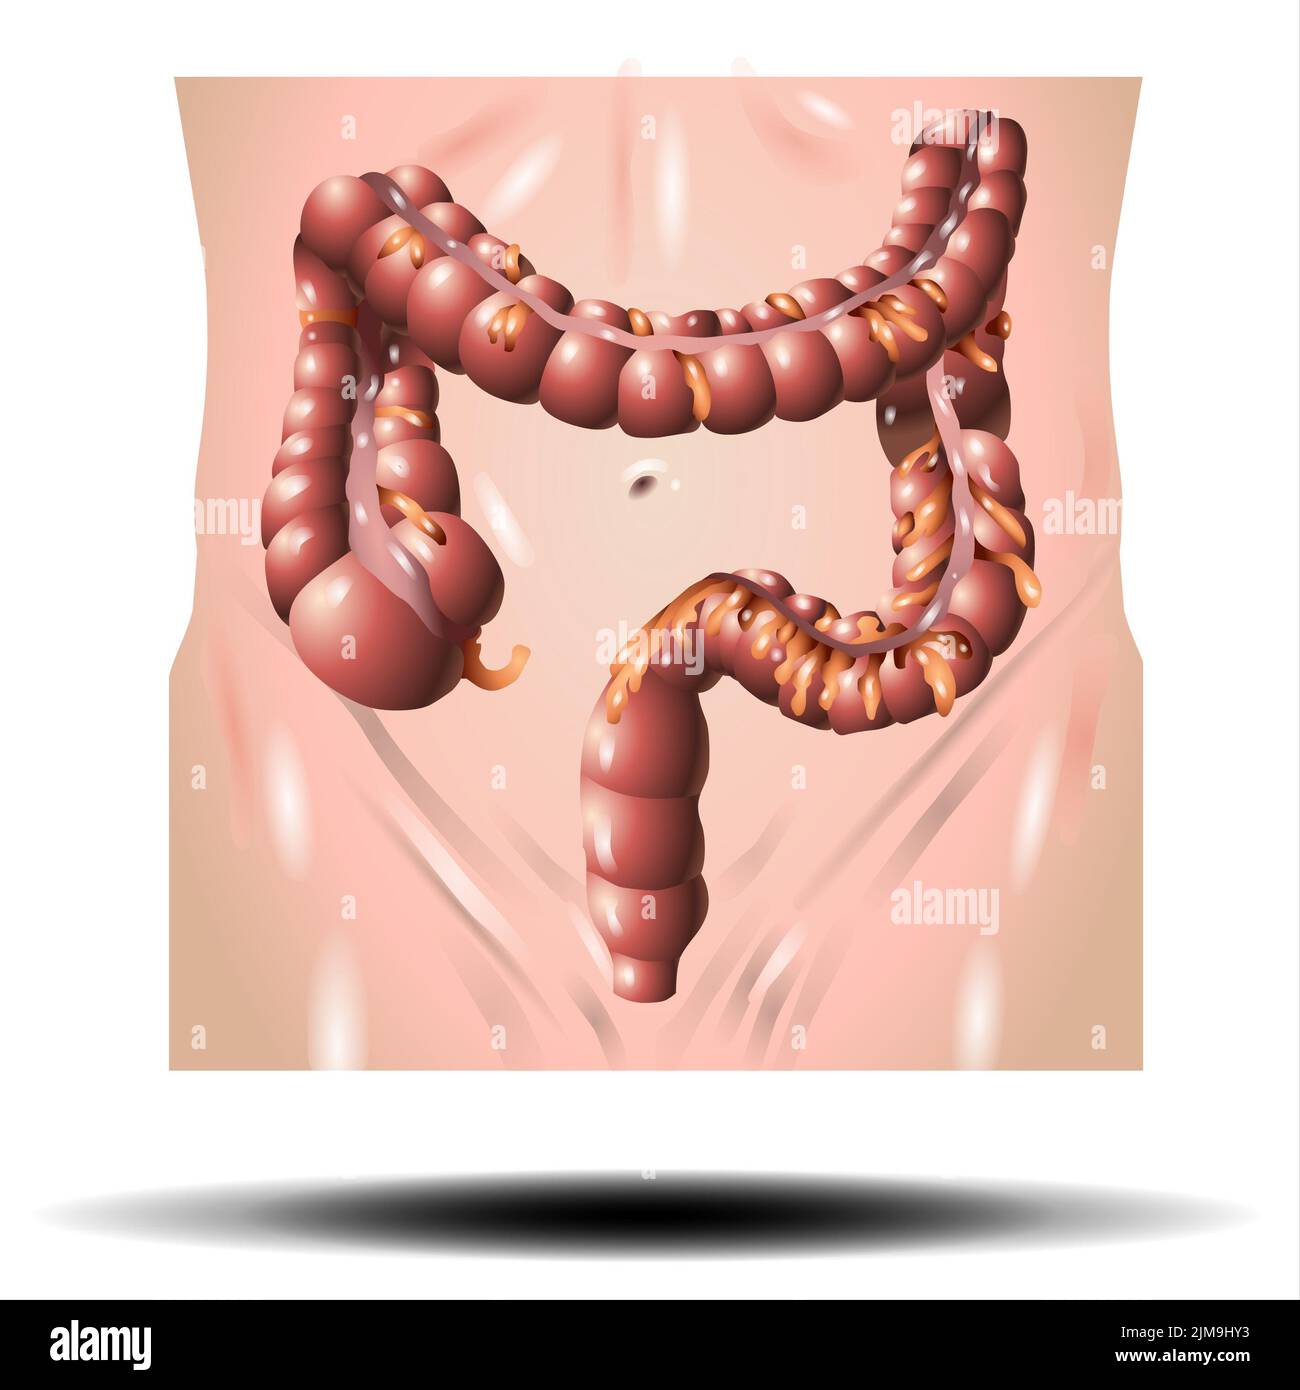 Anatomia del colon dell'intestino crasso su sfondo bianco Foto Stock